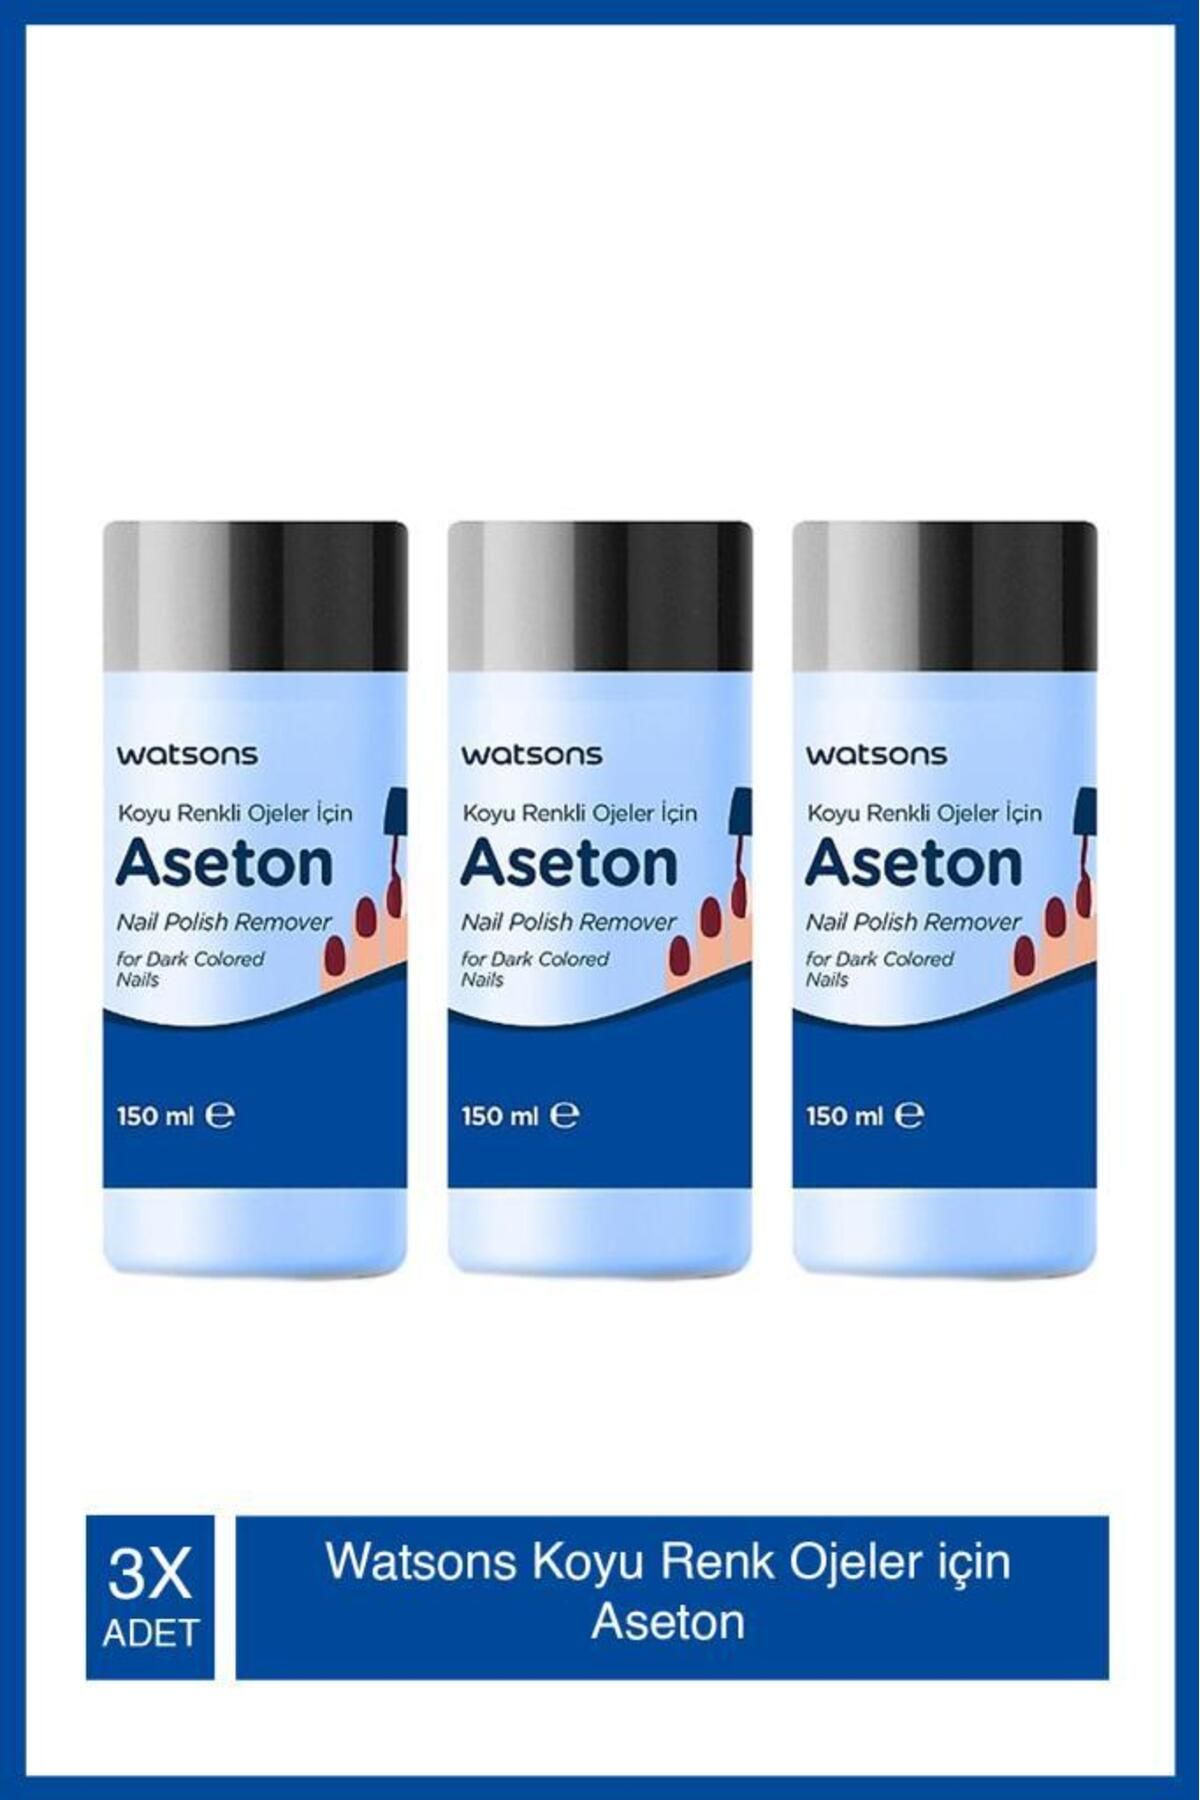 Watsons Koyu Renk Ojeler Için Aseton 150ml Tr X3 Adet